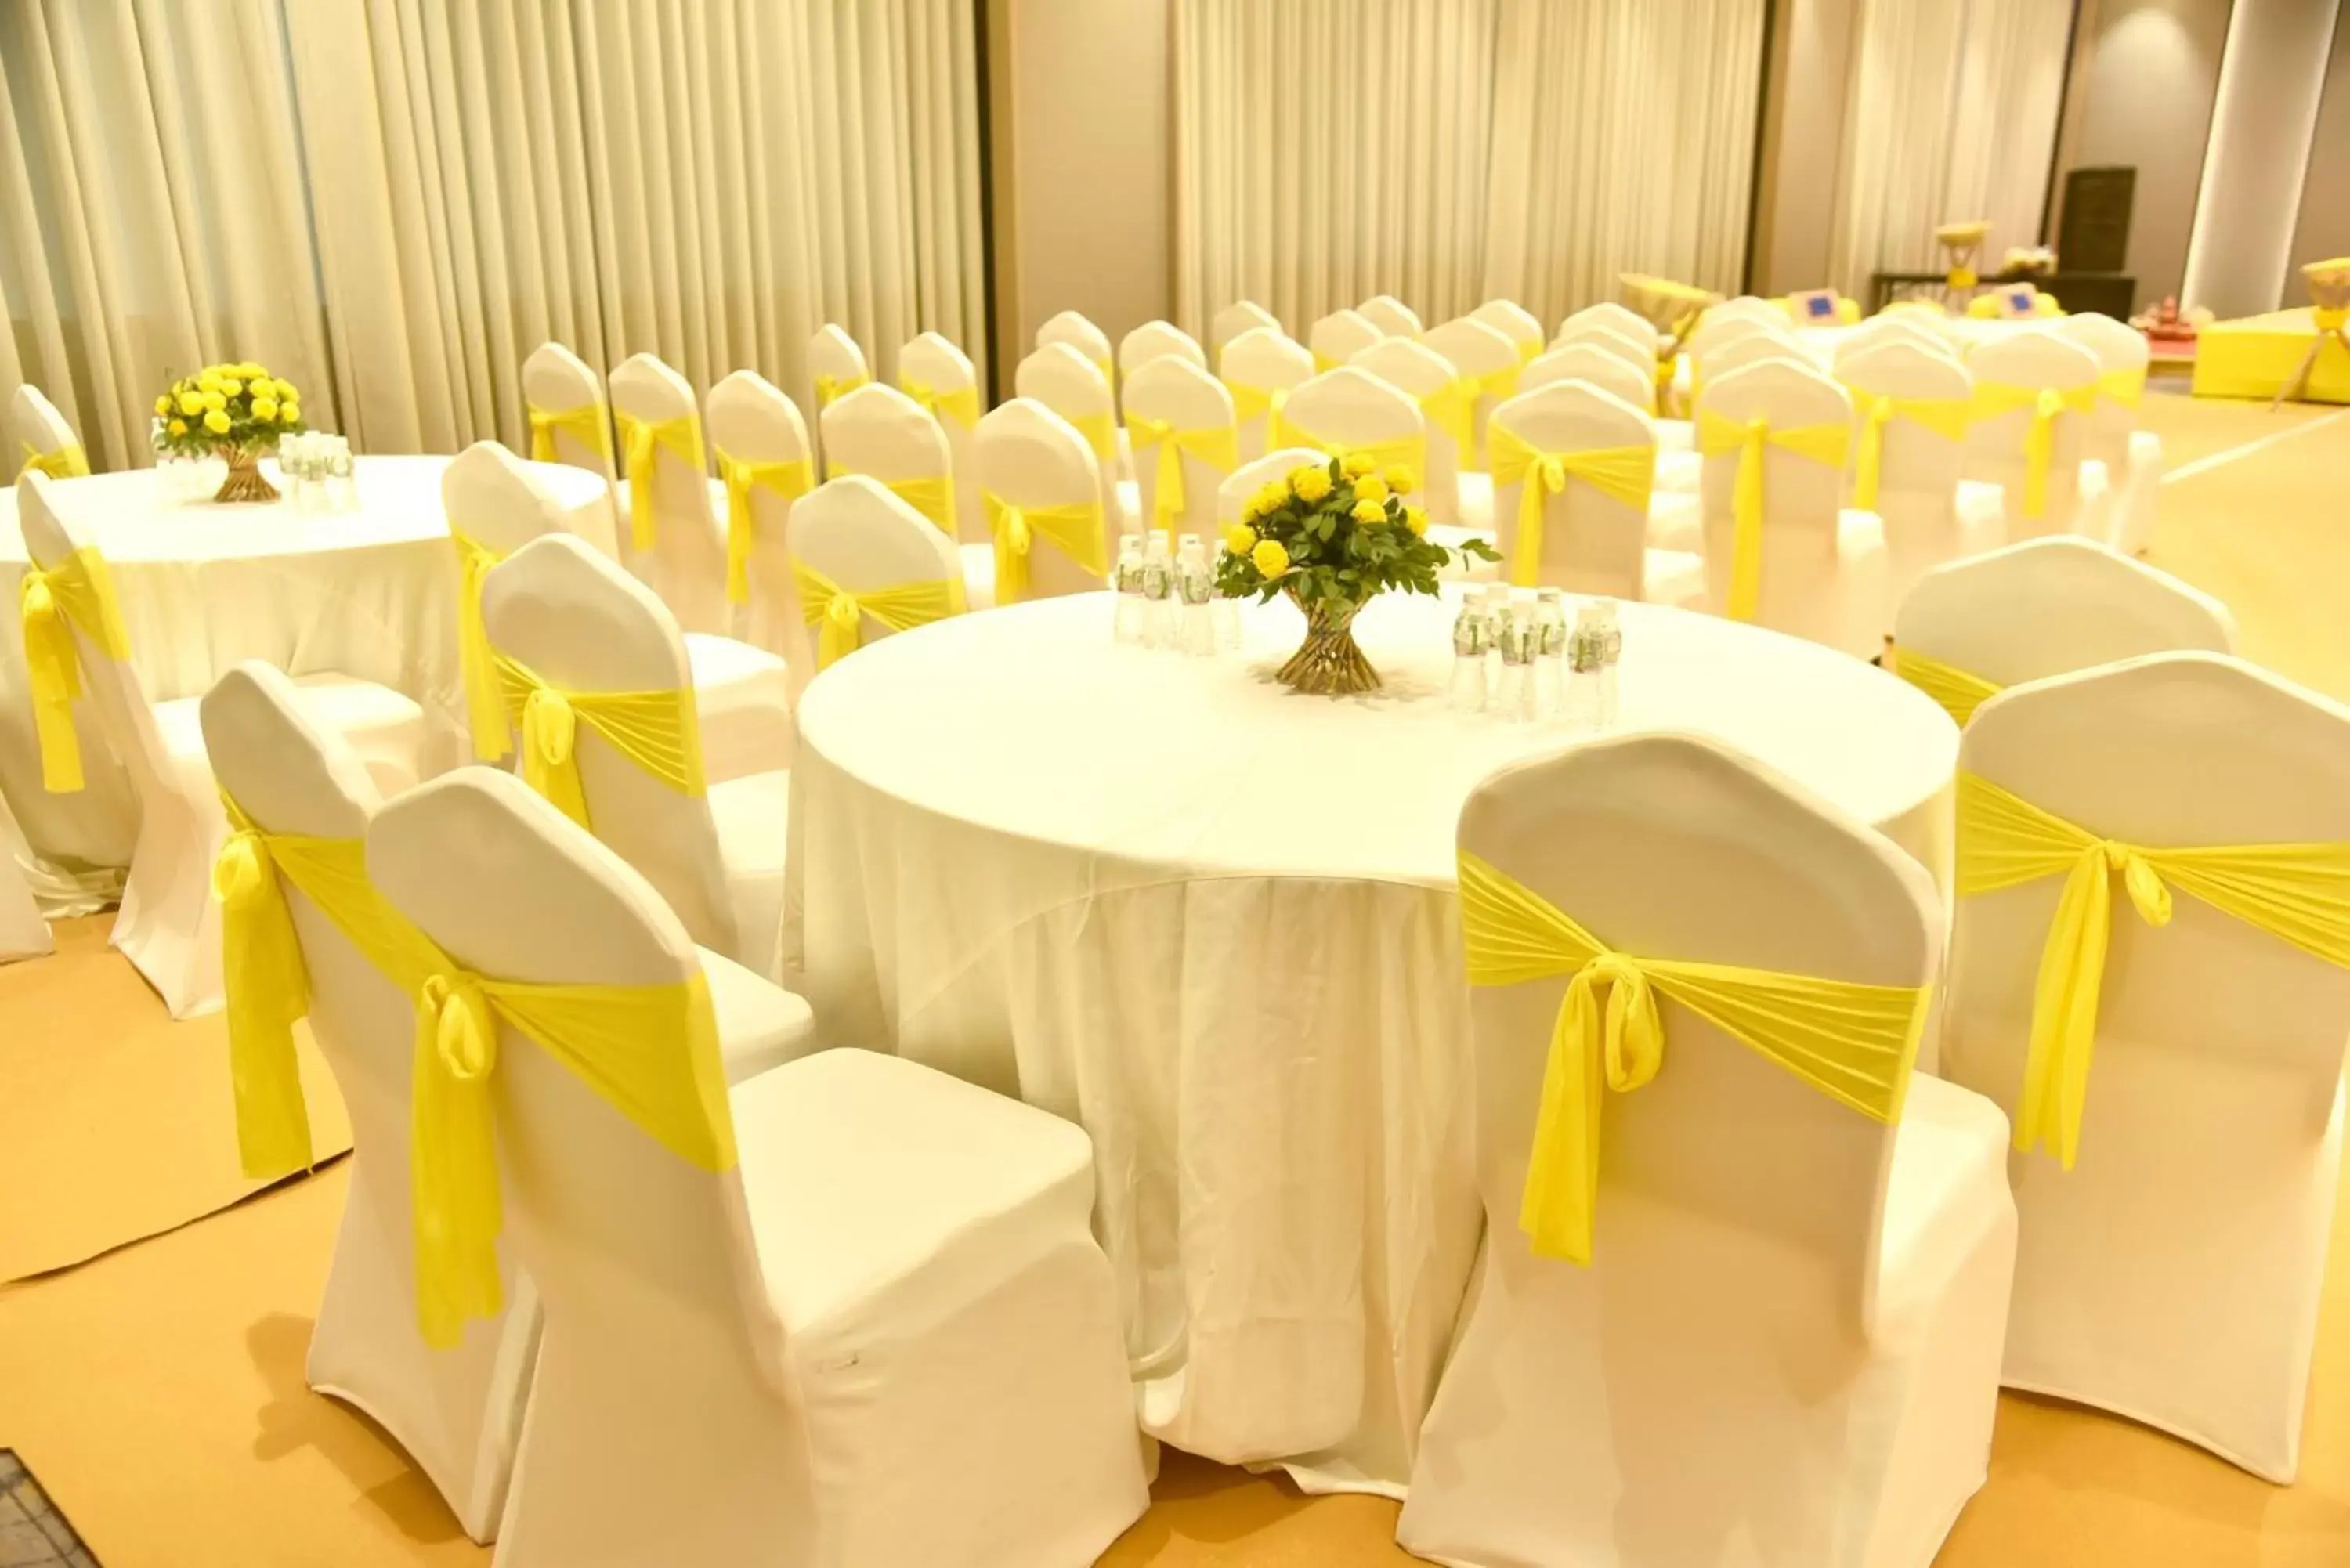 Banquet/Function facilities, Banquet Facilities in Fairfield by Marriott Vadodara